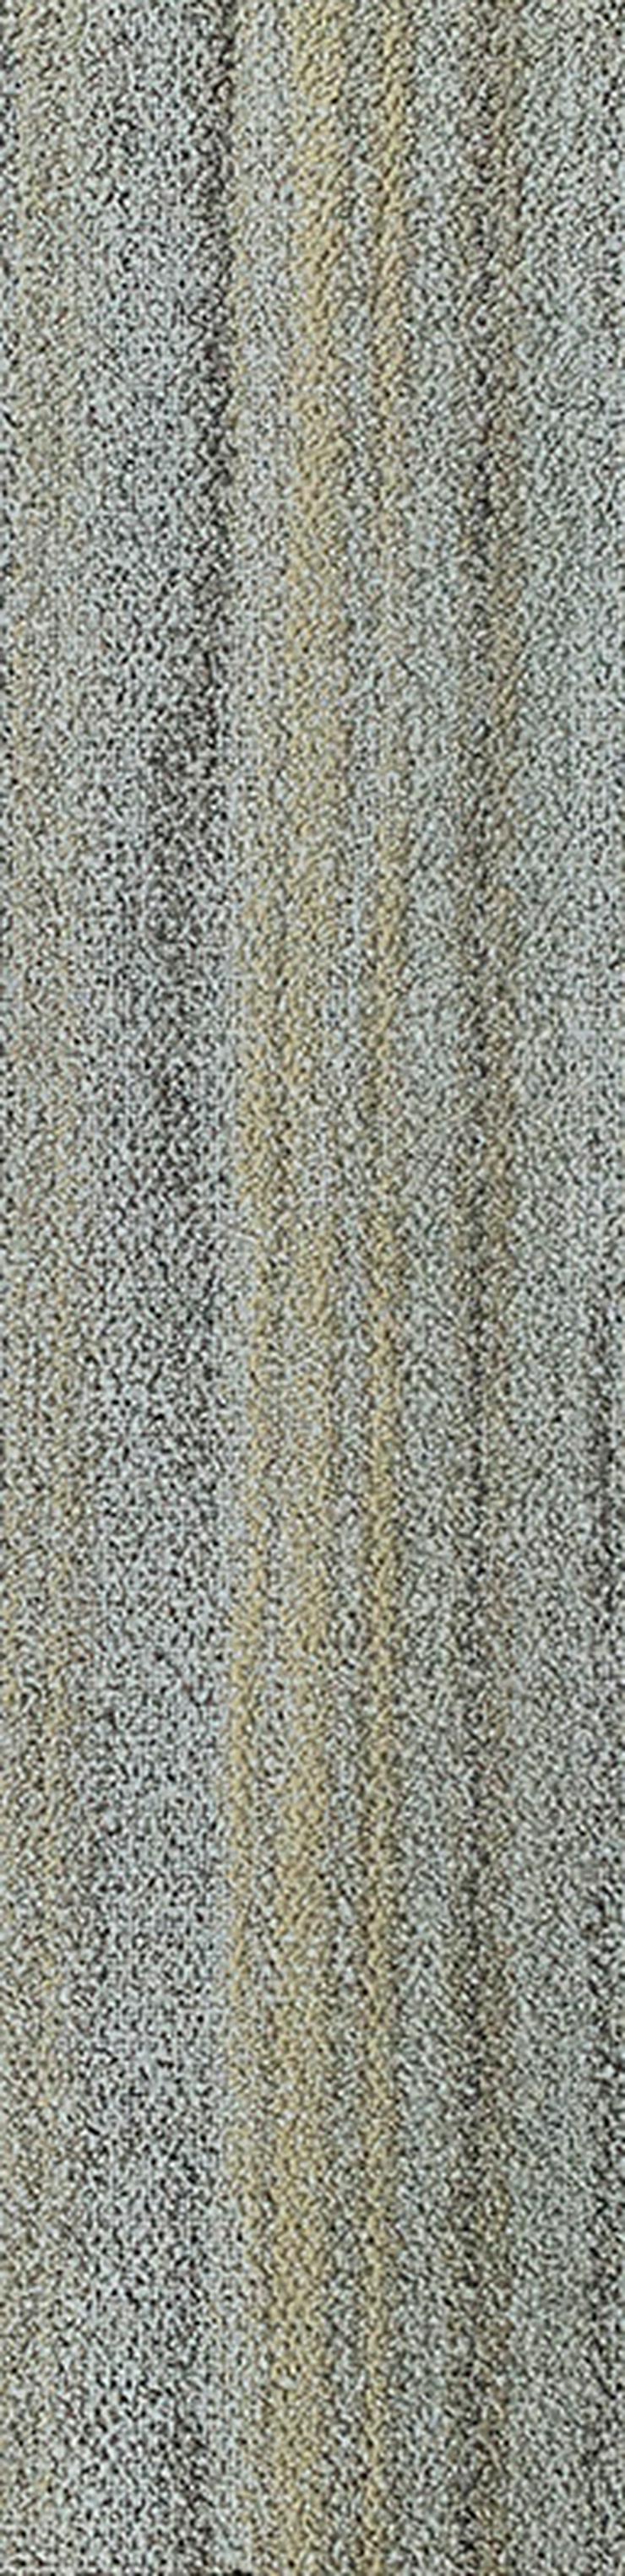 Schöne 'Laminat' Teppichfliesen 25x100cm Sehr Decorativ - Teppiche - Bild 7